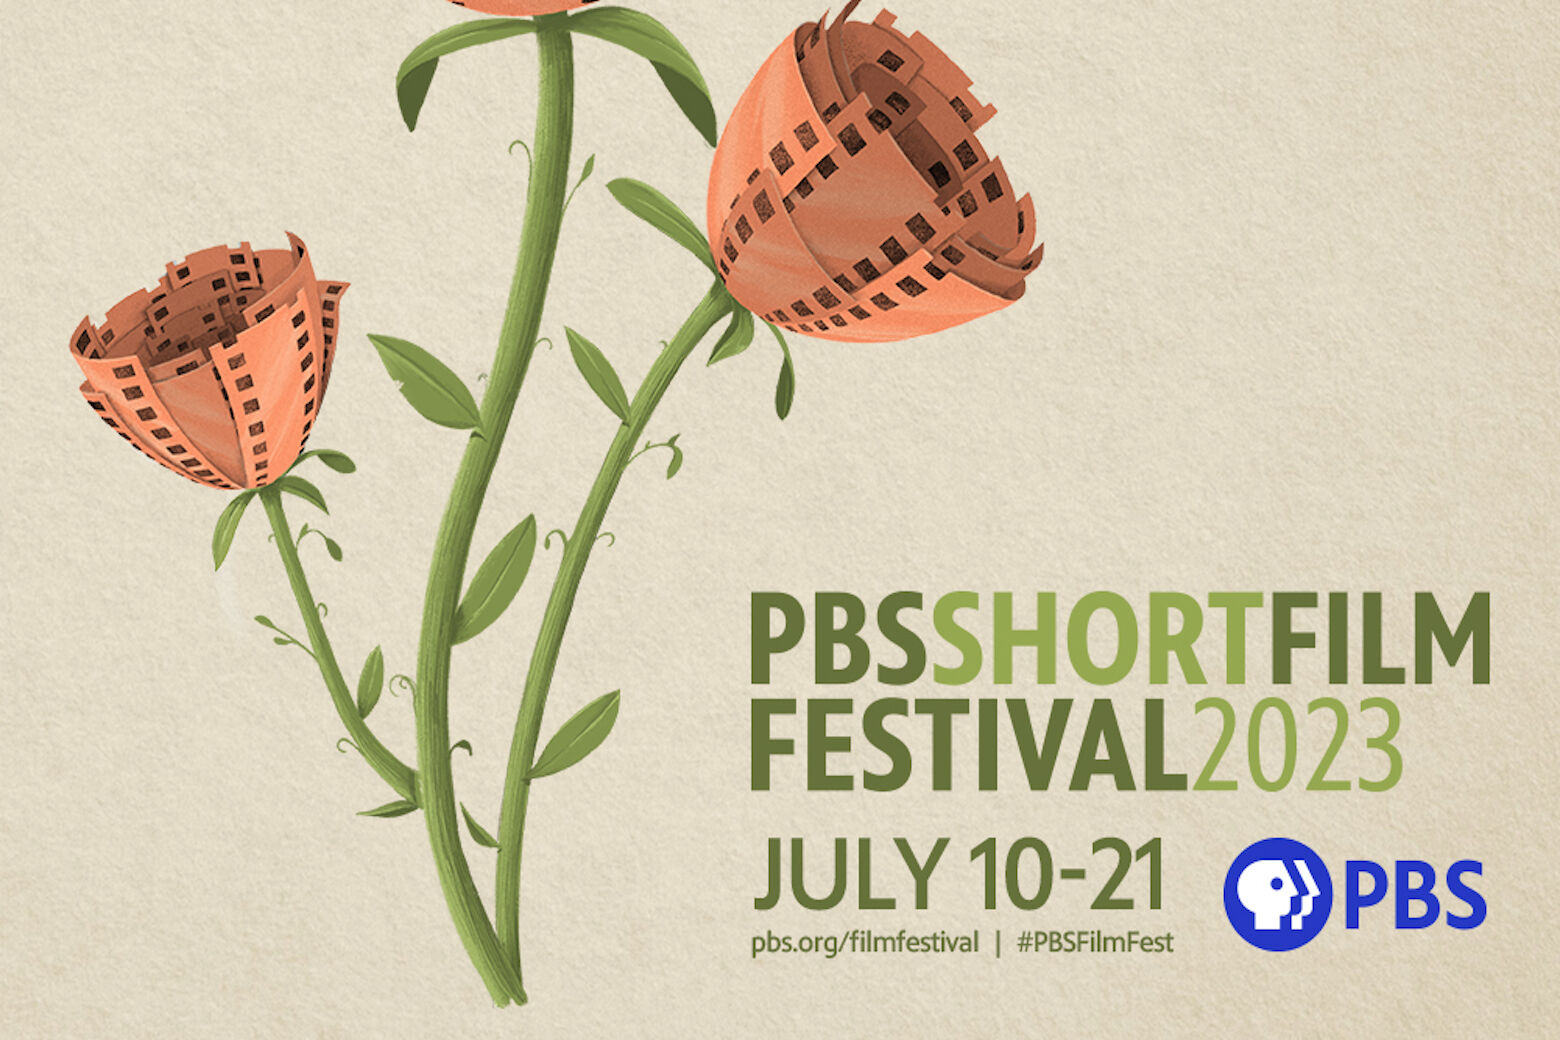 PBS Short Film Fest explores DC shoes, opioid crisis and prison